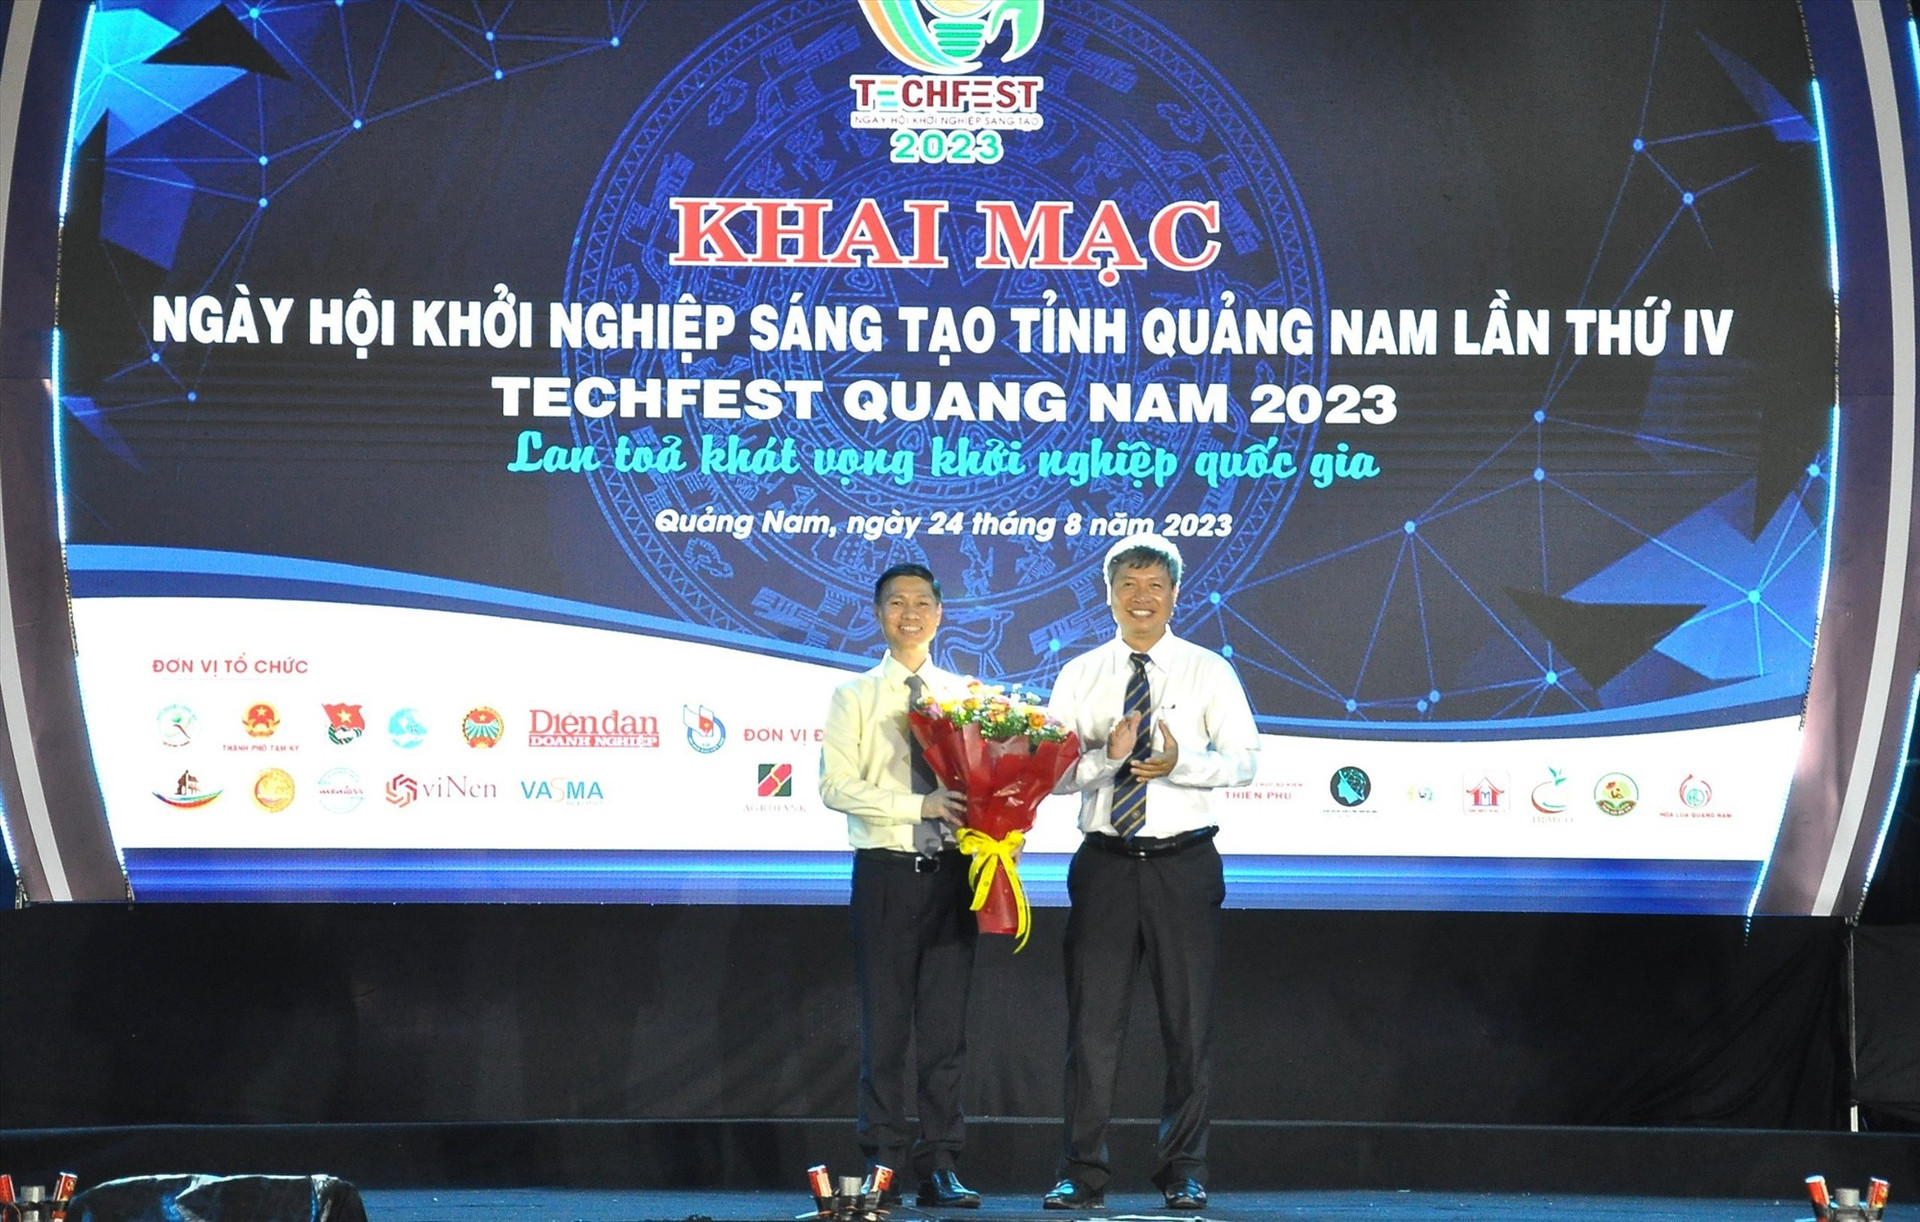 Phó Chủ tịch UBND tỉnh Hồ Quang Bửu tặng hoa cho lãnh đạo Thaco trong đêm khai mạc TechFest Quang Nam 2023 nhằm ghi nhận sự tài trợ, đóng góp của Thaco trong việc xây dựng hệ sinh thái KN. Ảnh: VINH ANH